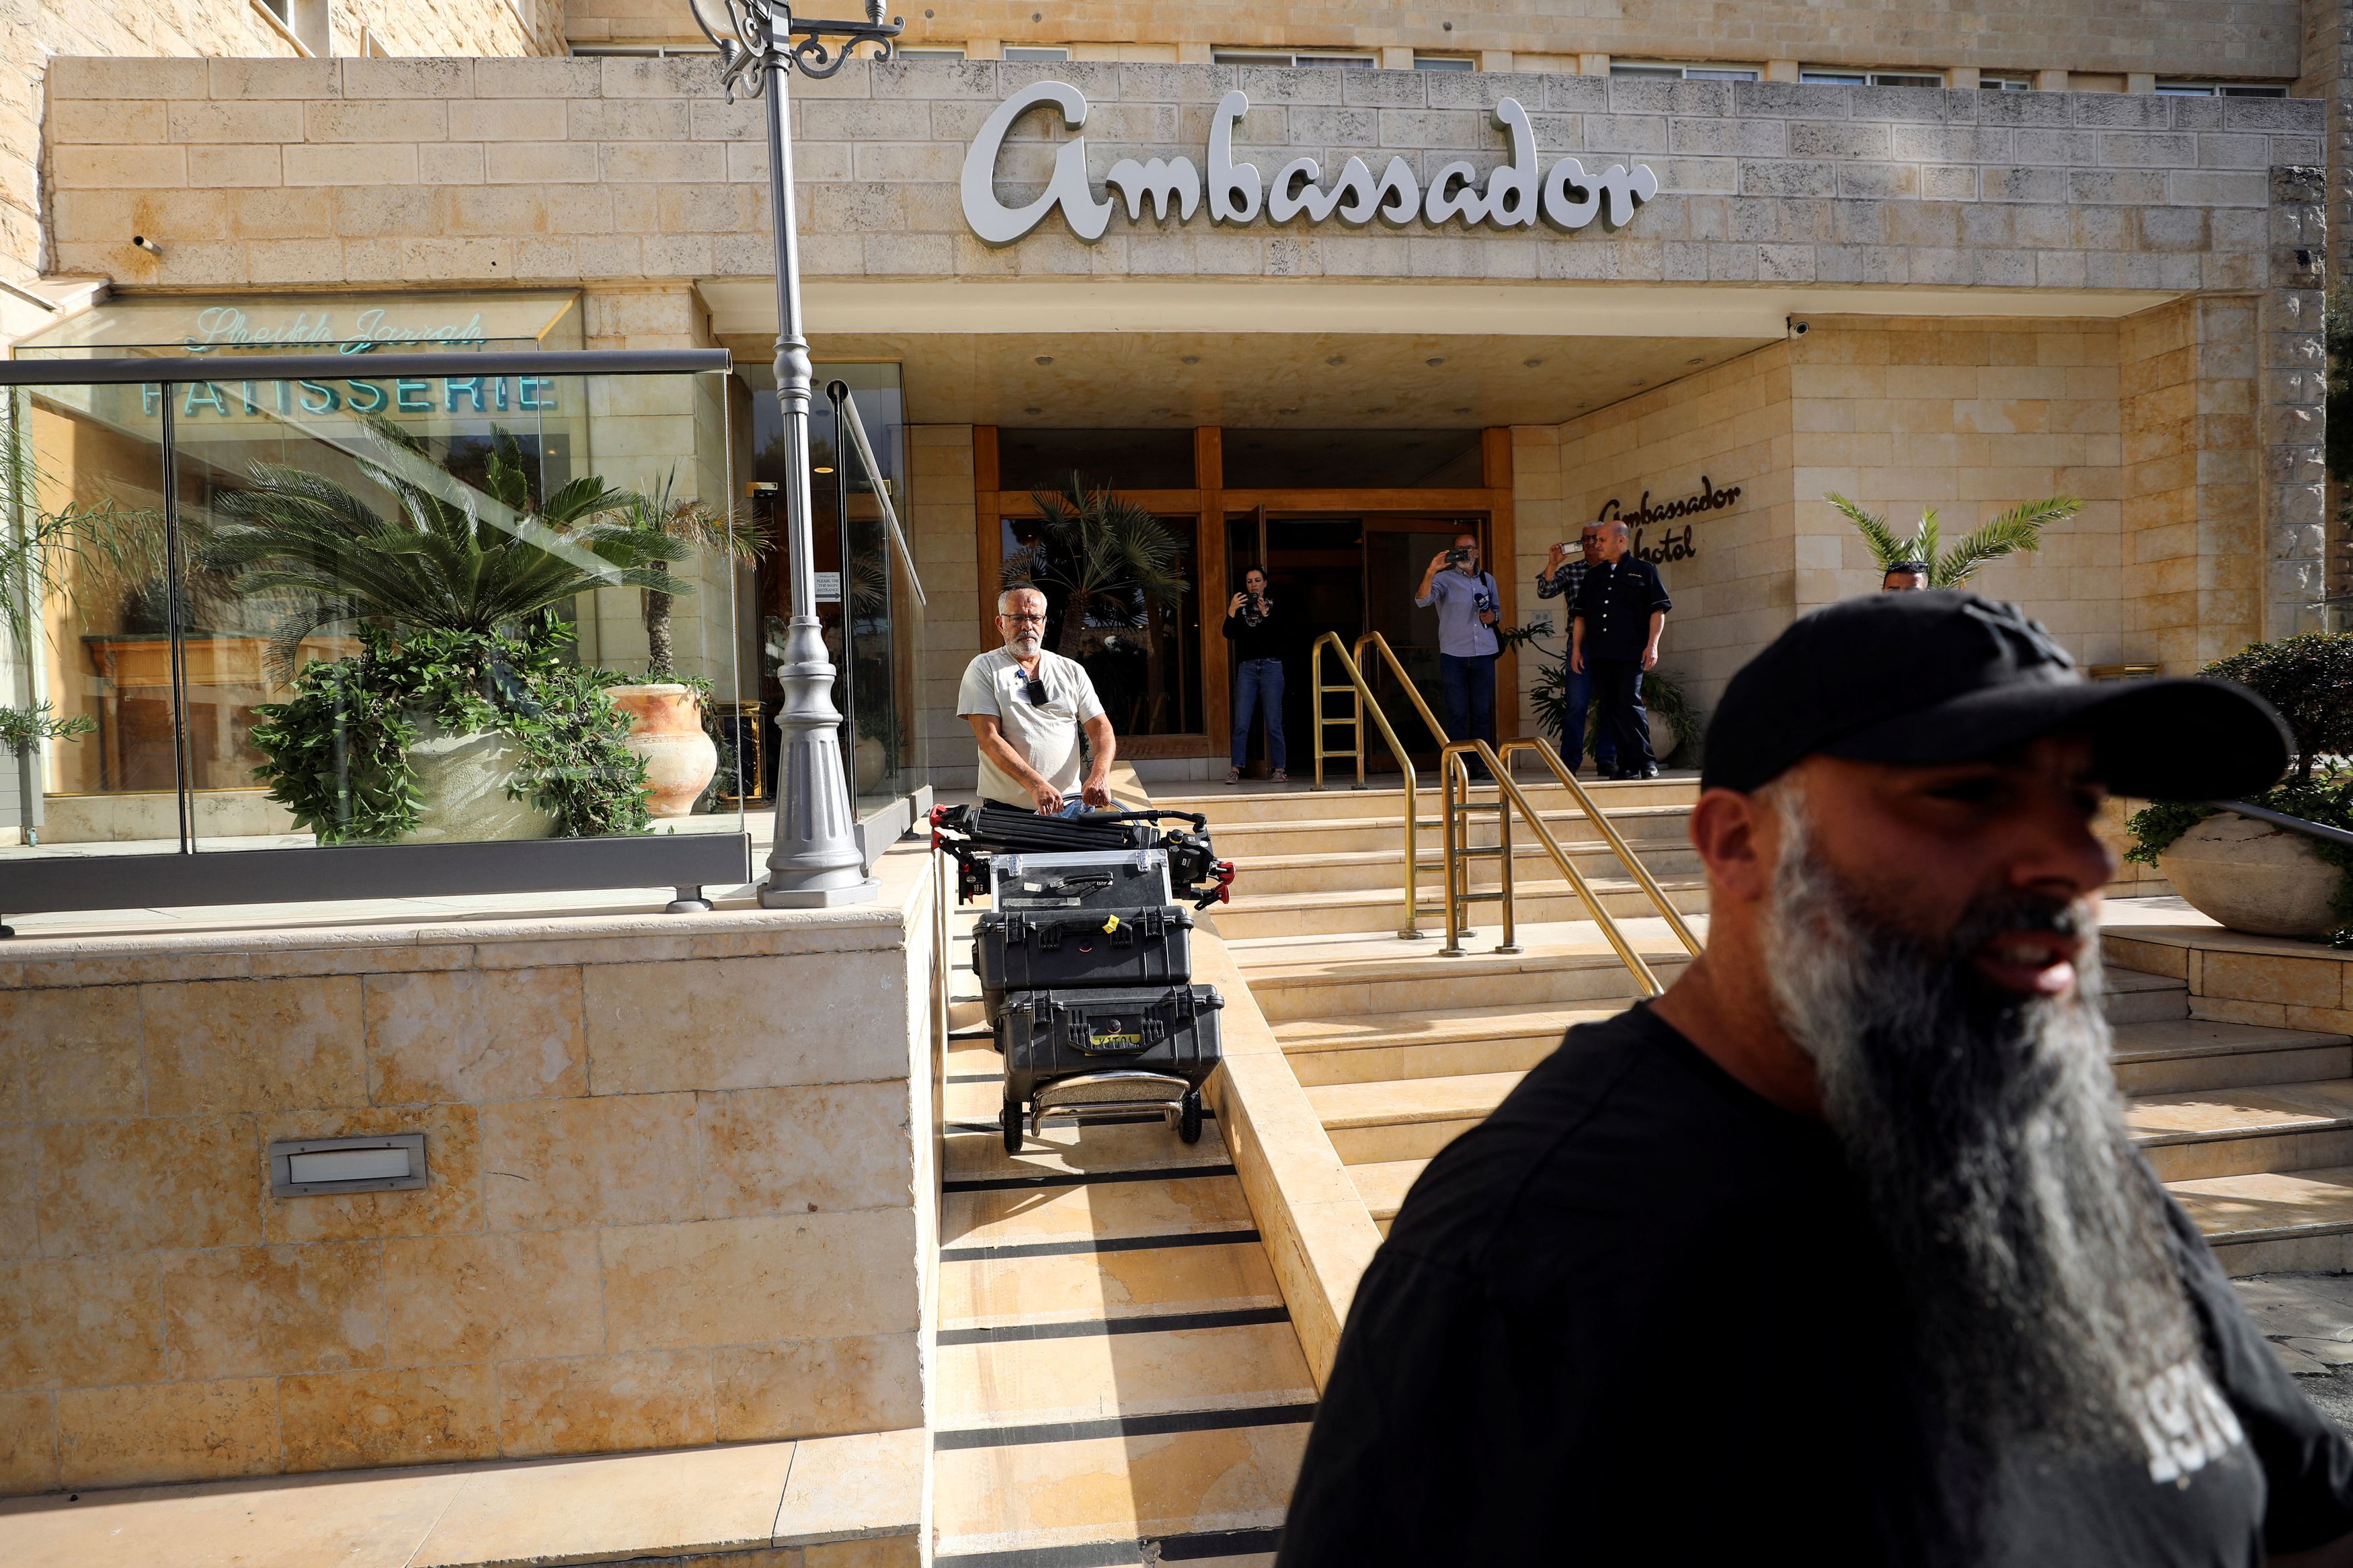 israel shuts down al jazeera’s operations, raids jerusalem office